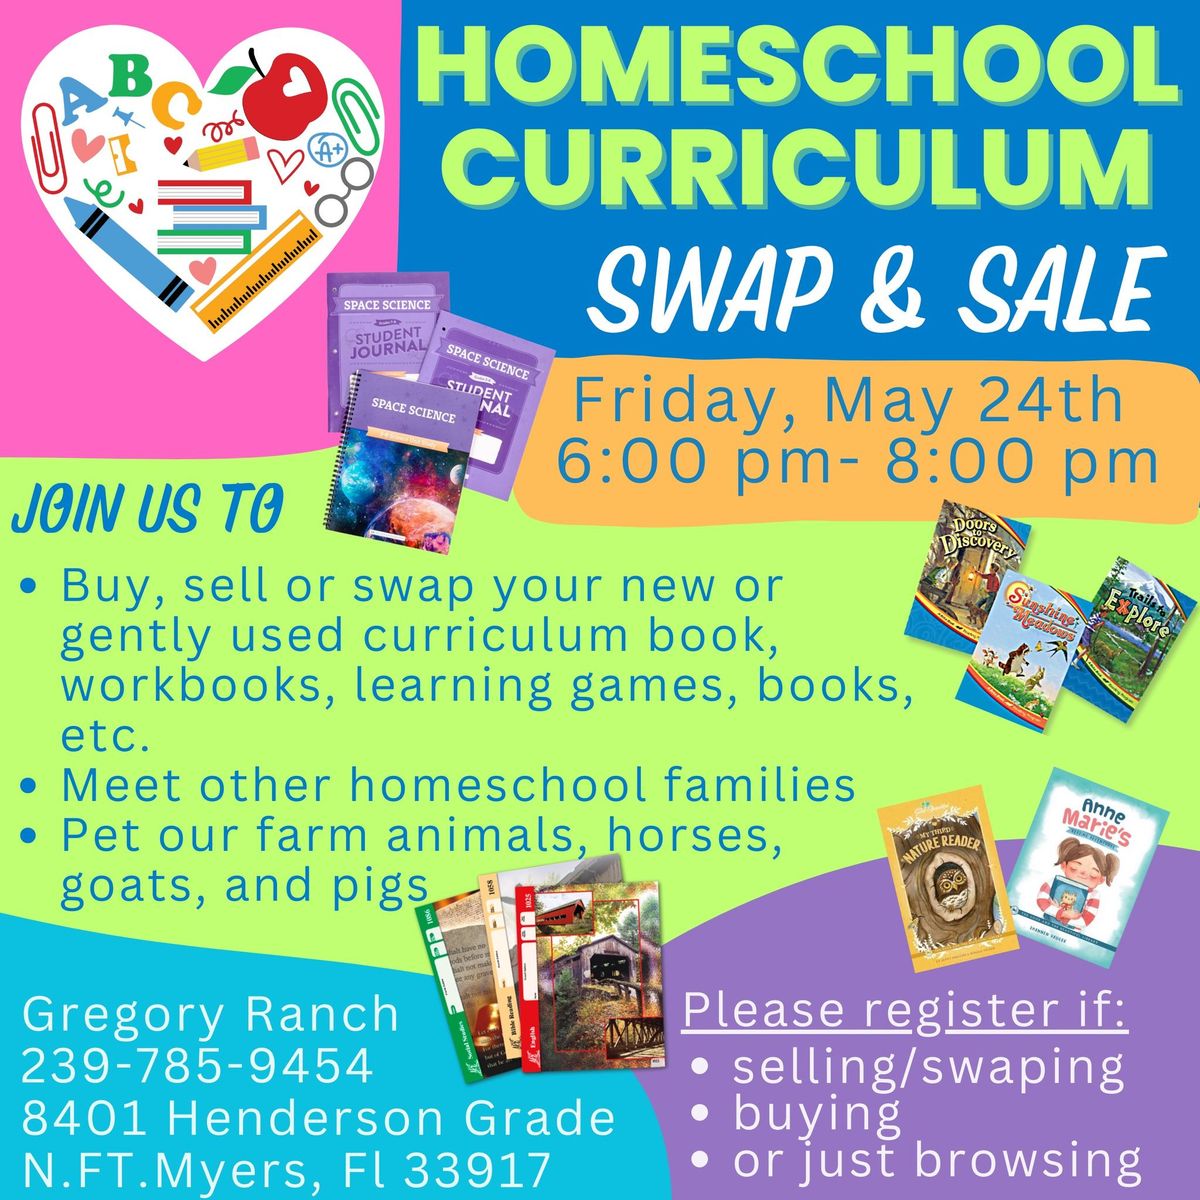 Homeschool curriculum swap & sale